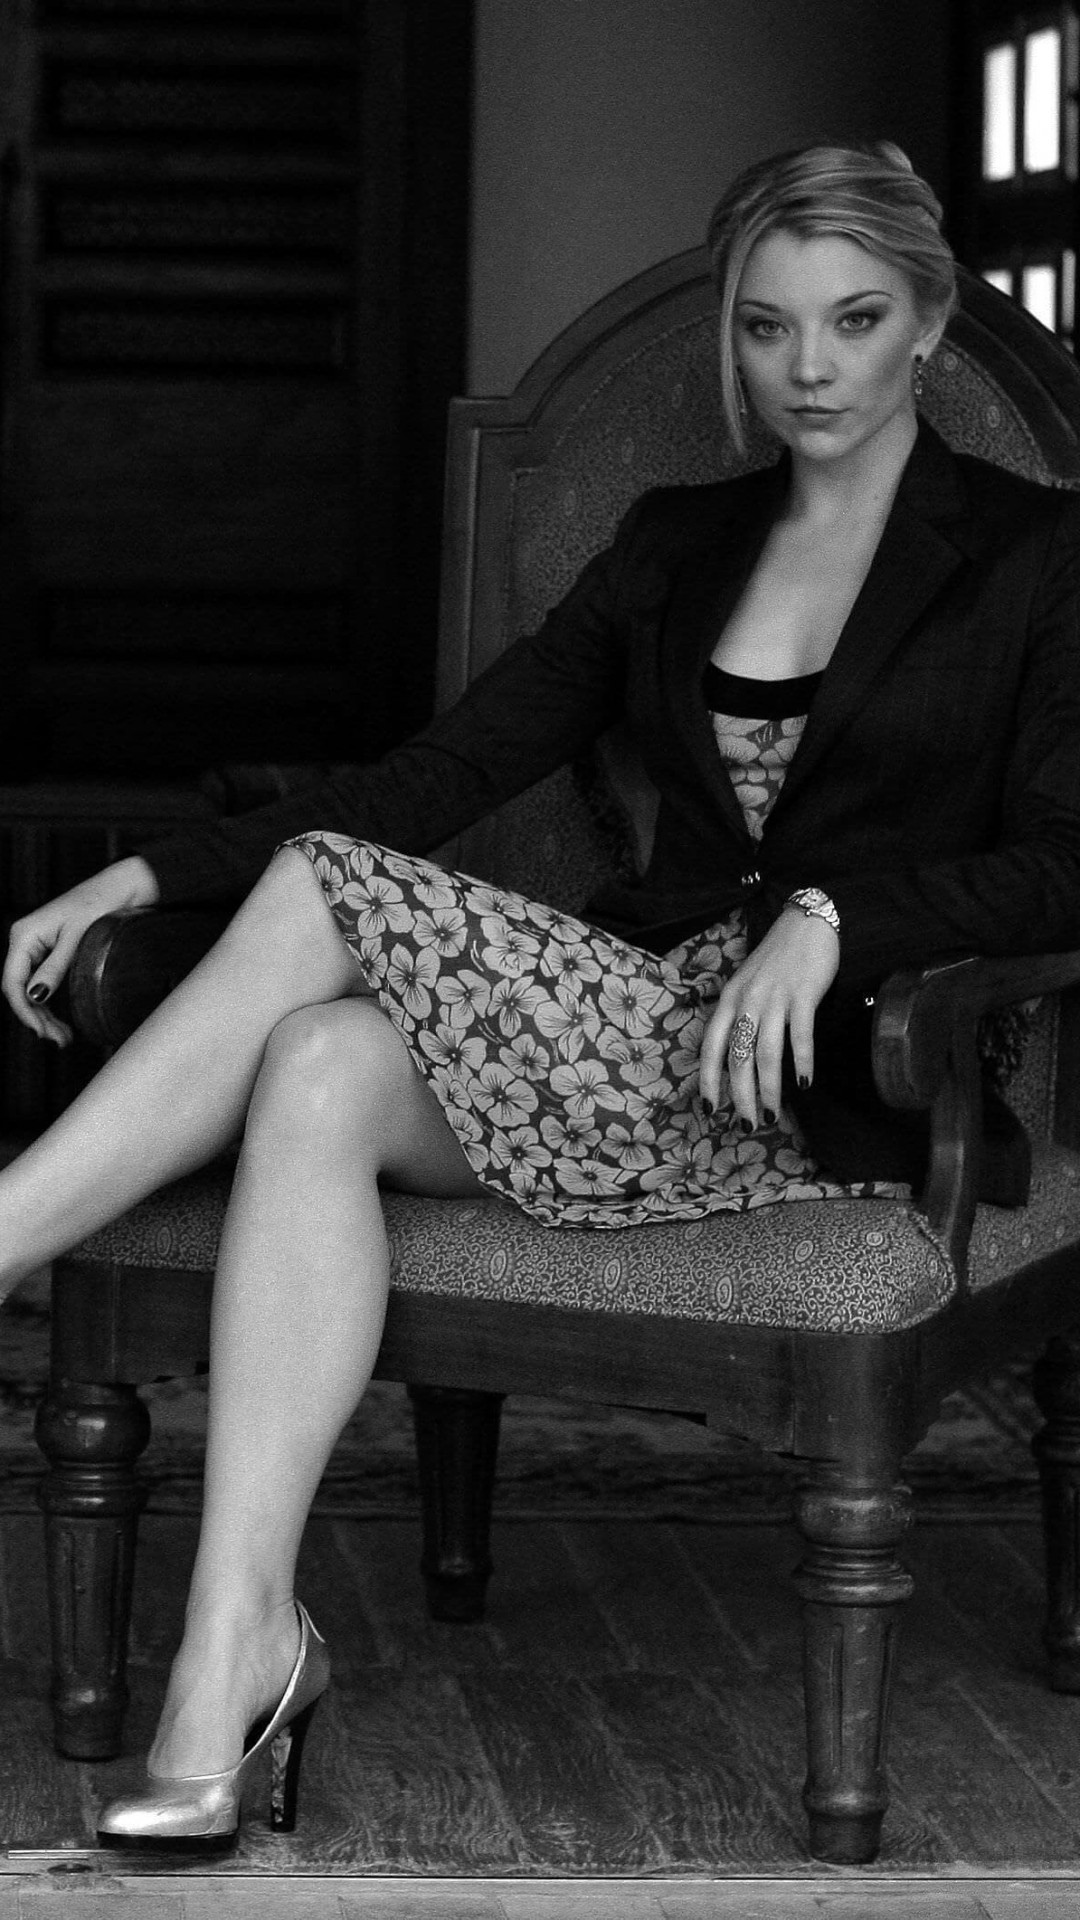 Natalie Dormer in Black & White Wallpaper for Google Nexus 5